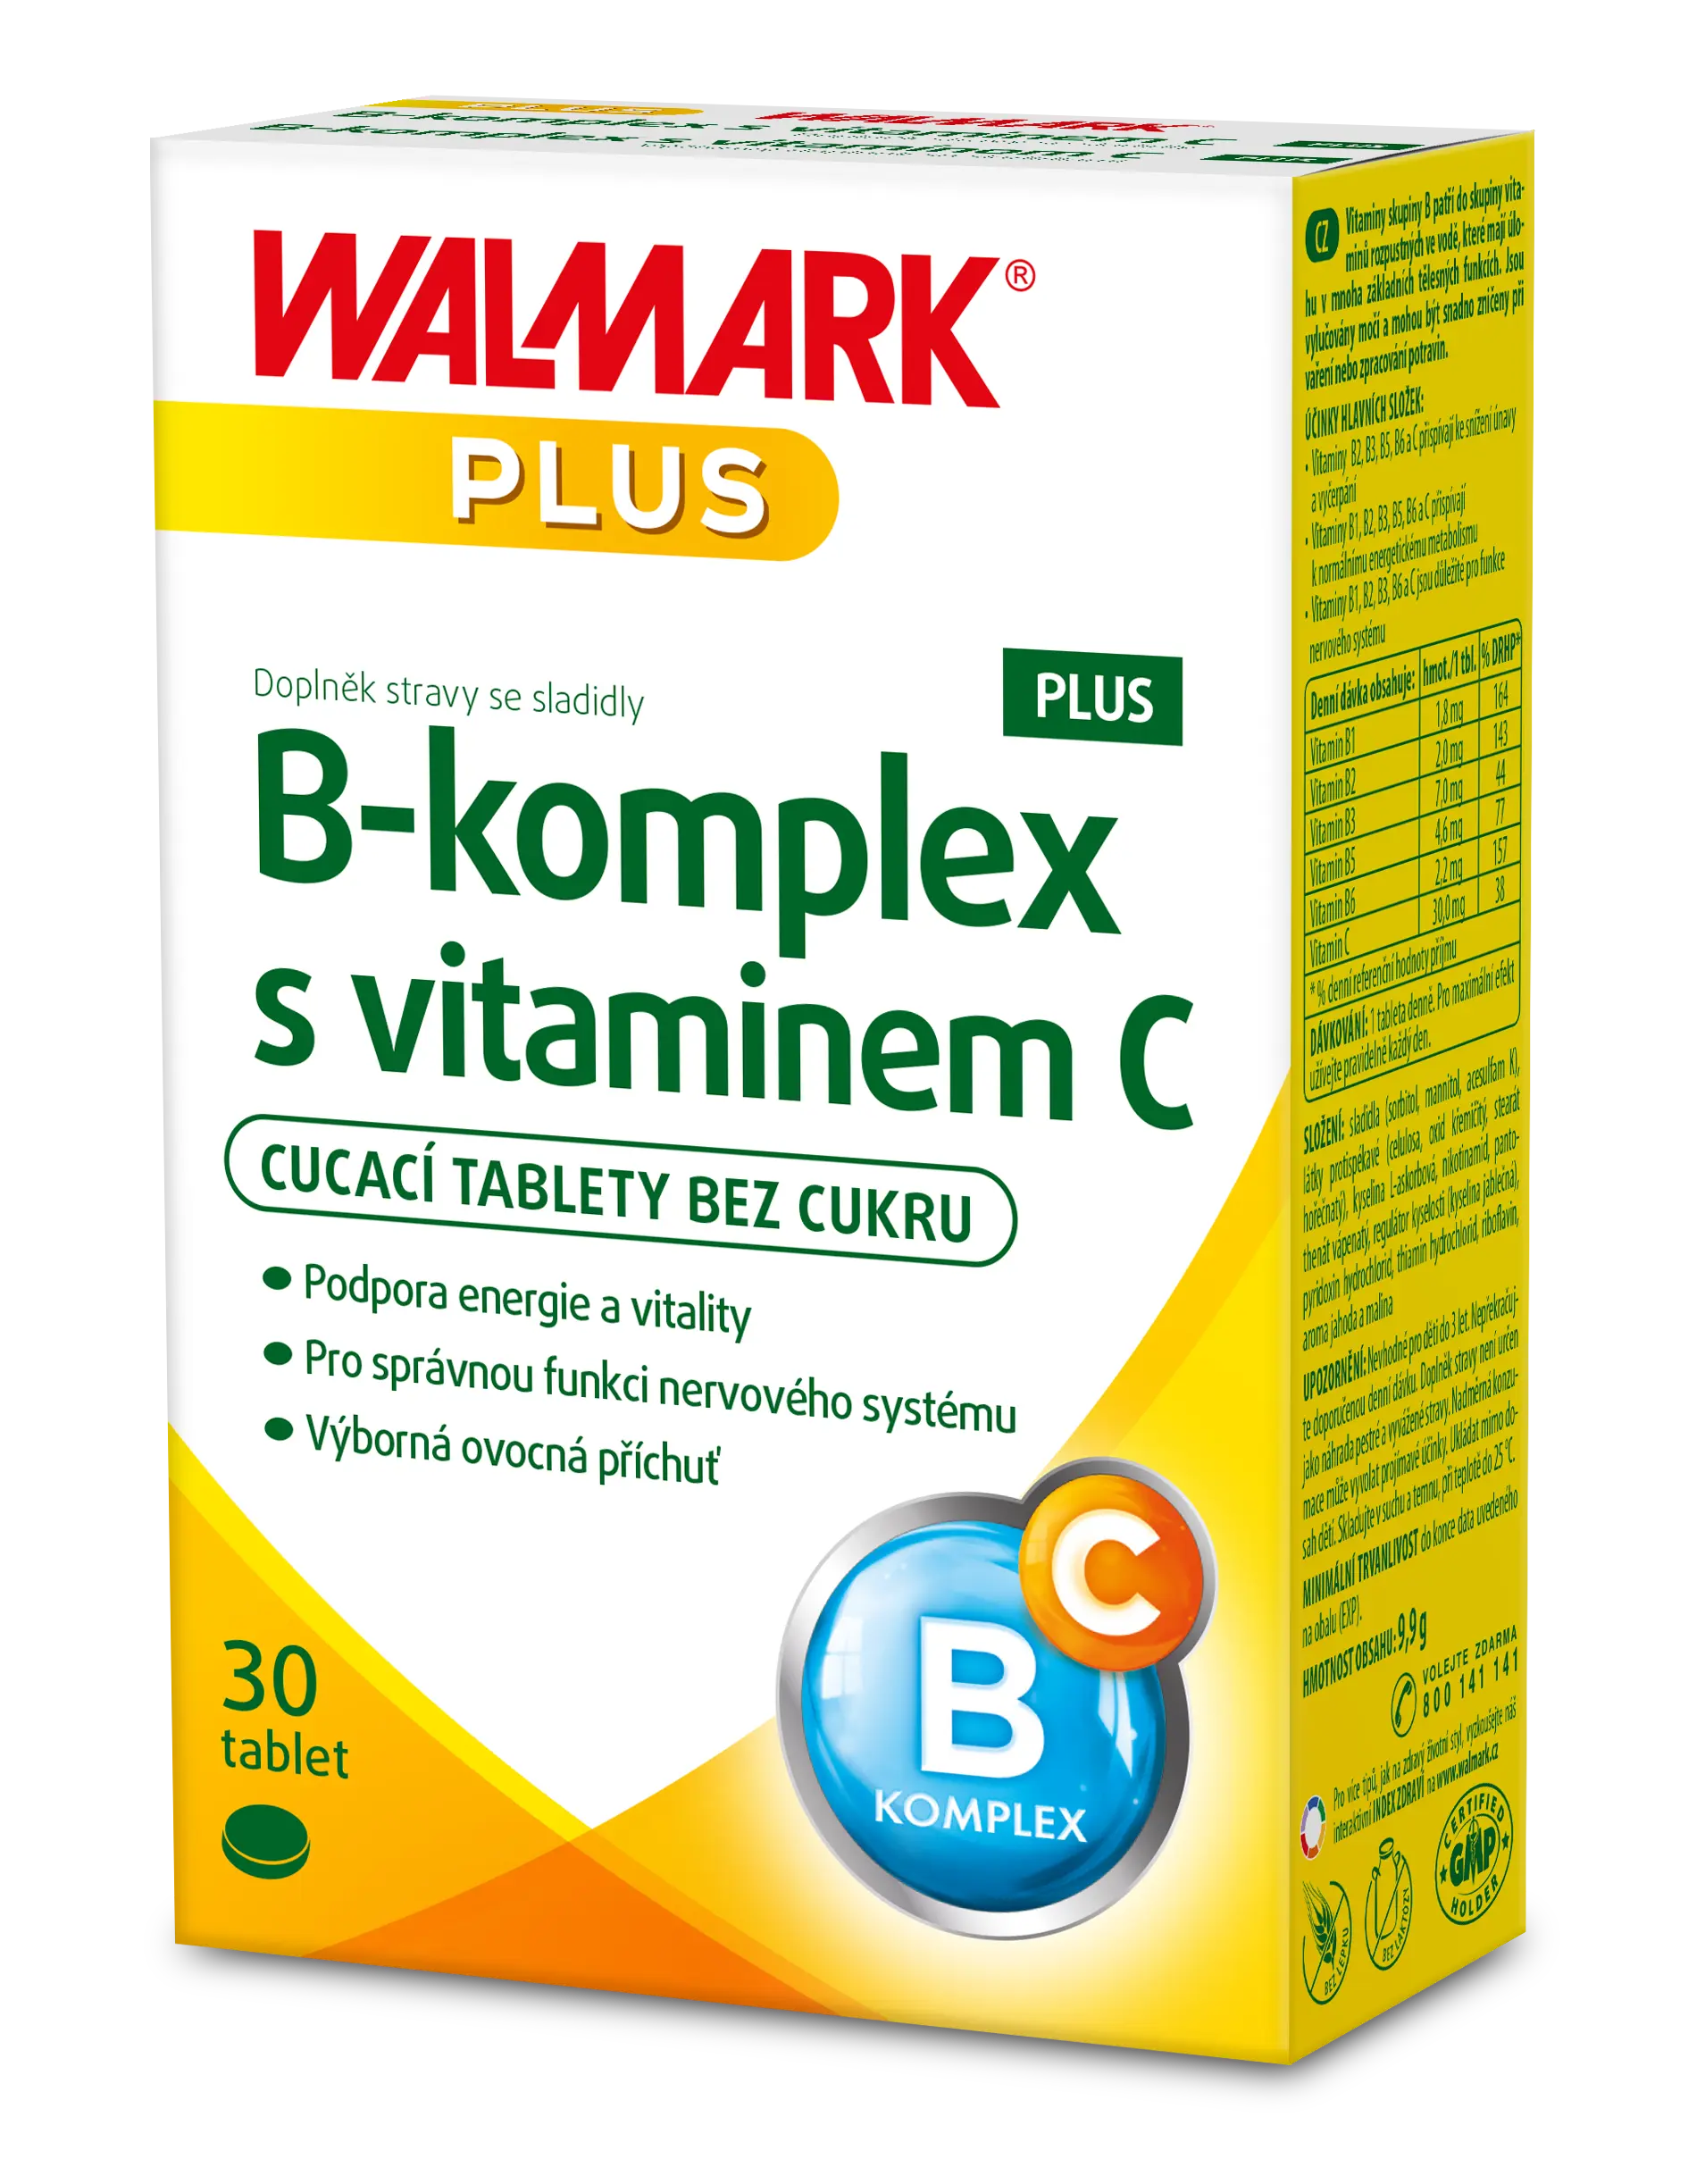 Walmark B-komplex + Vitamin C 30 tablet